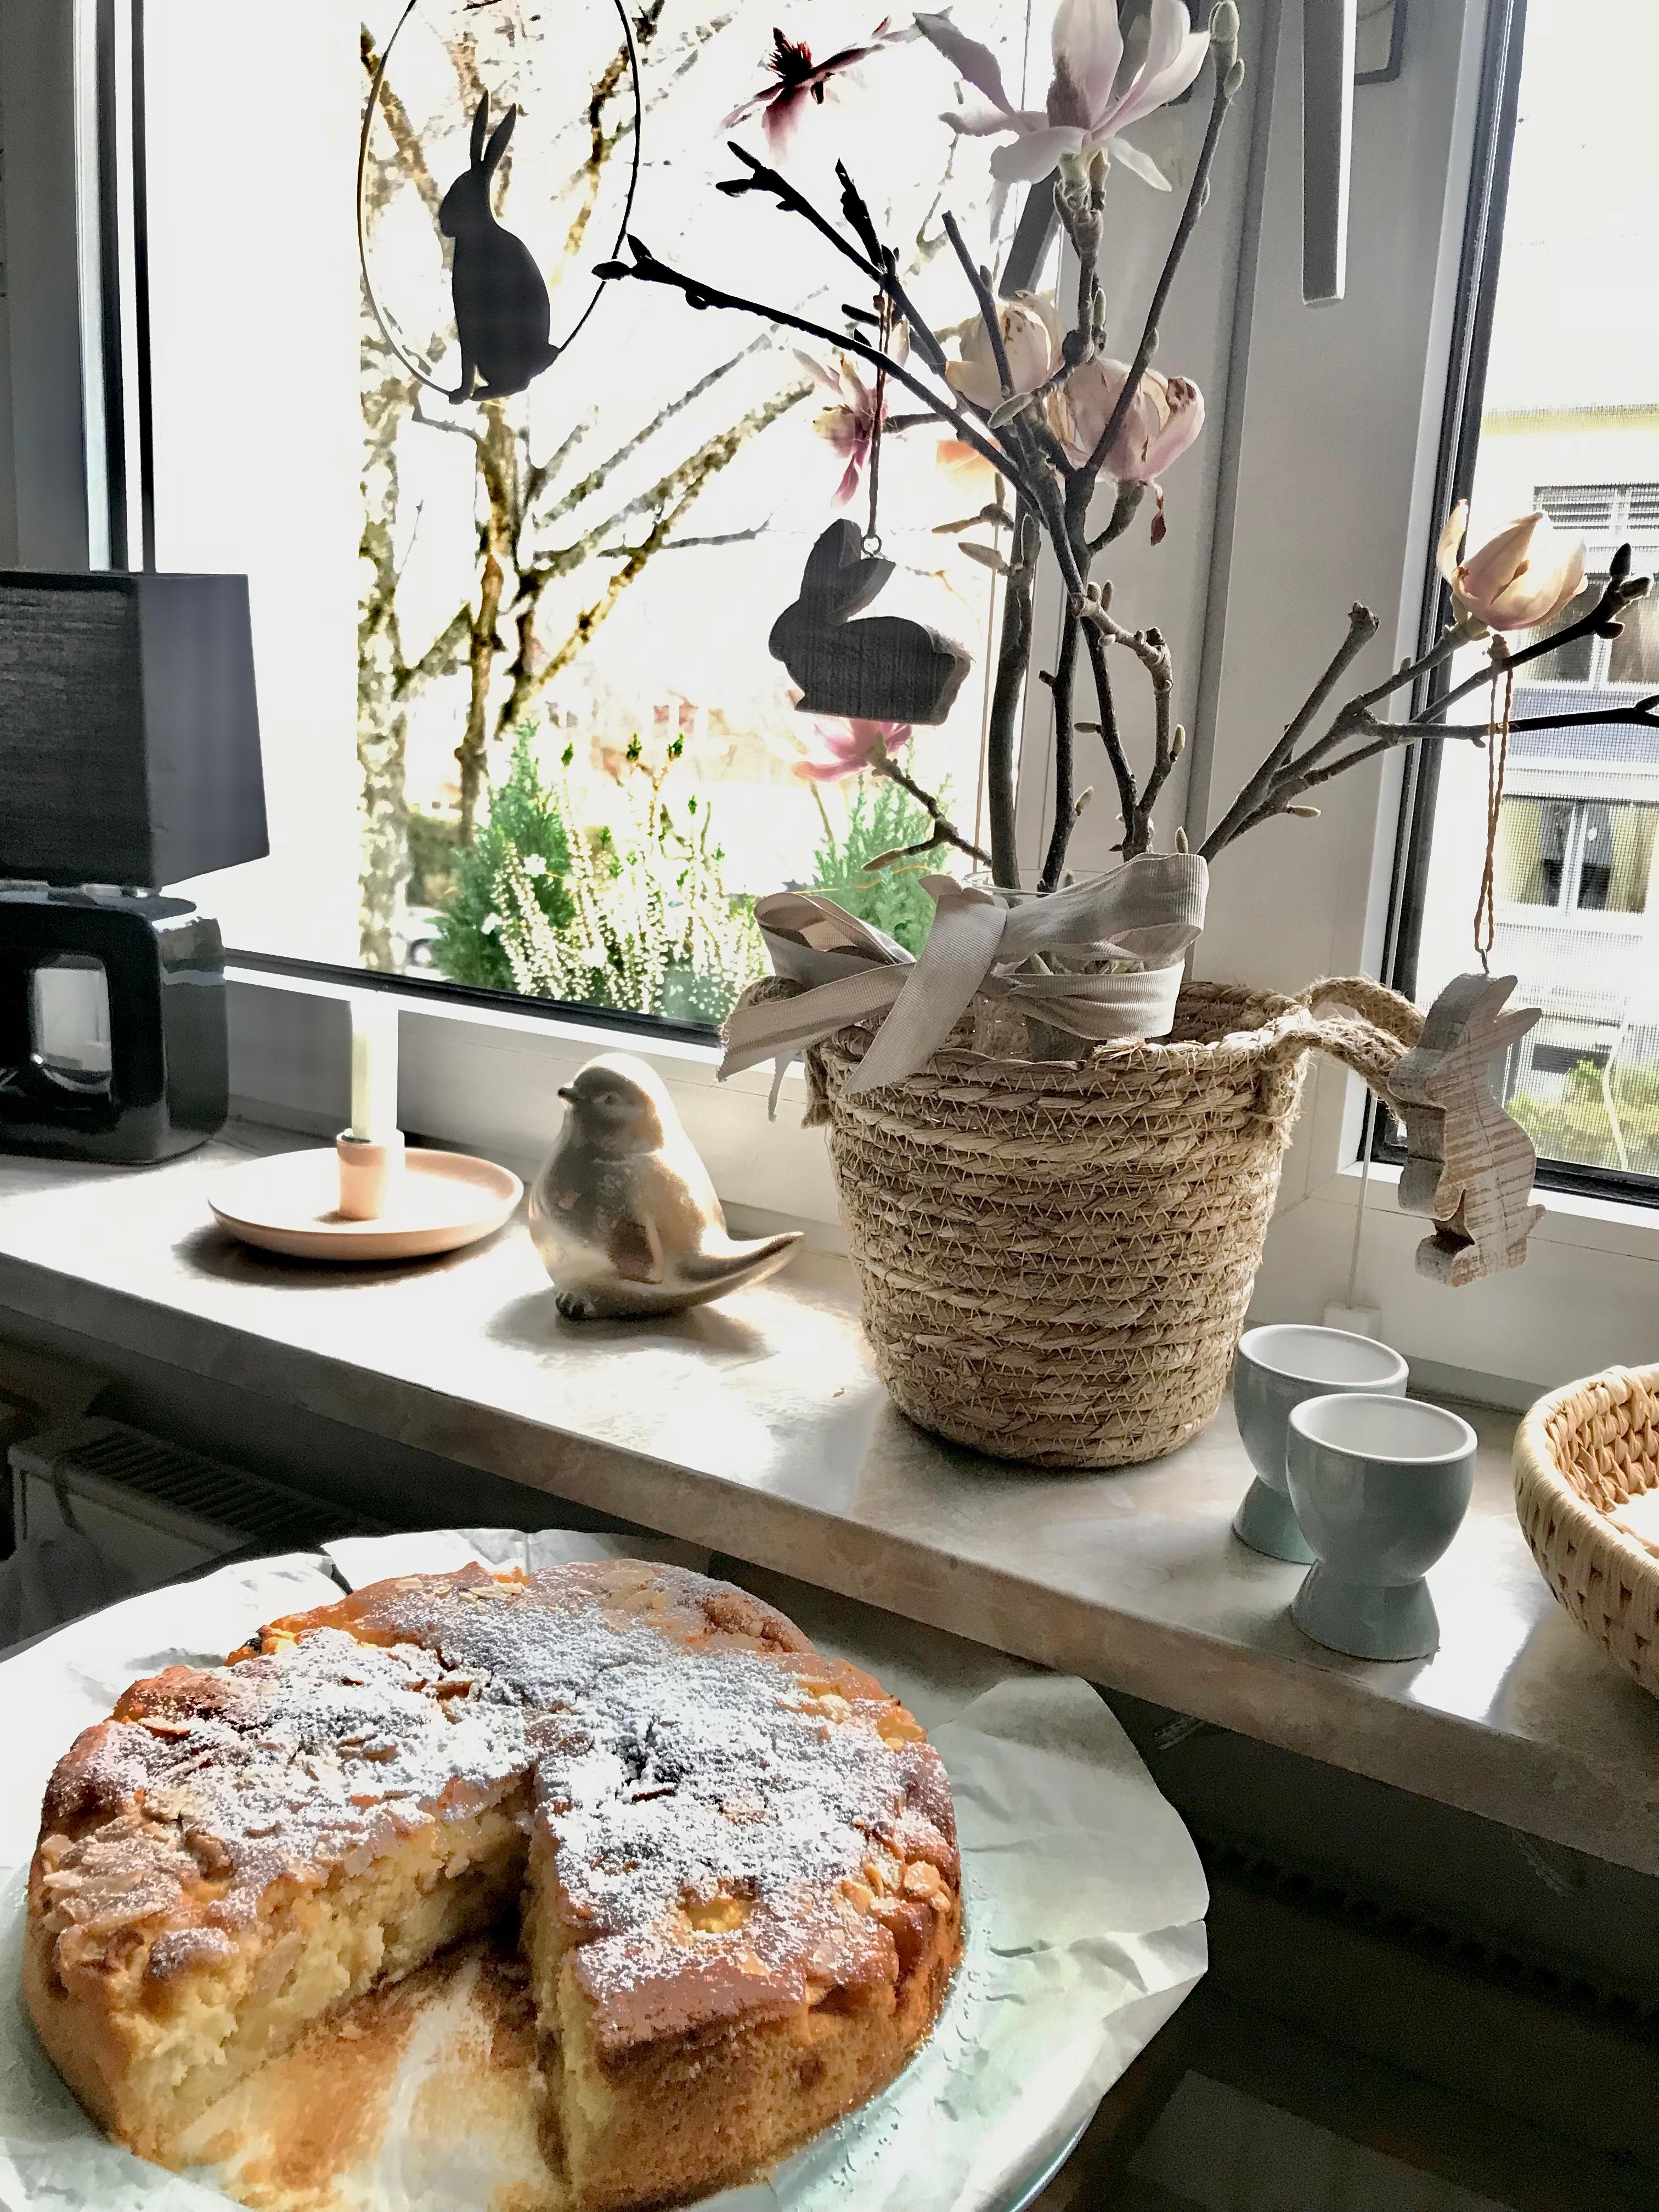 Sonntagskuchen 🤍
#osterdeko #apfelkuchen #nachmittag #home #küche #magnolien #hase #kerze #cozy #cafezeit 